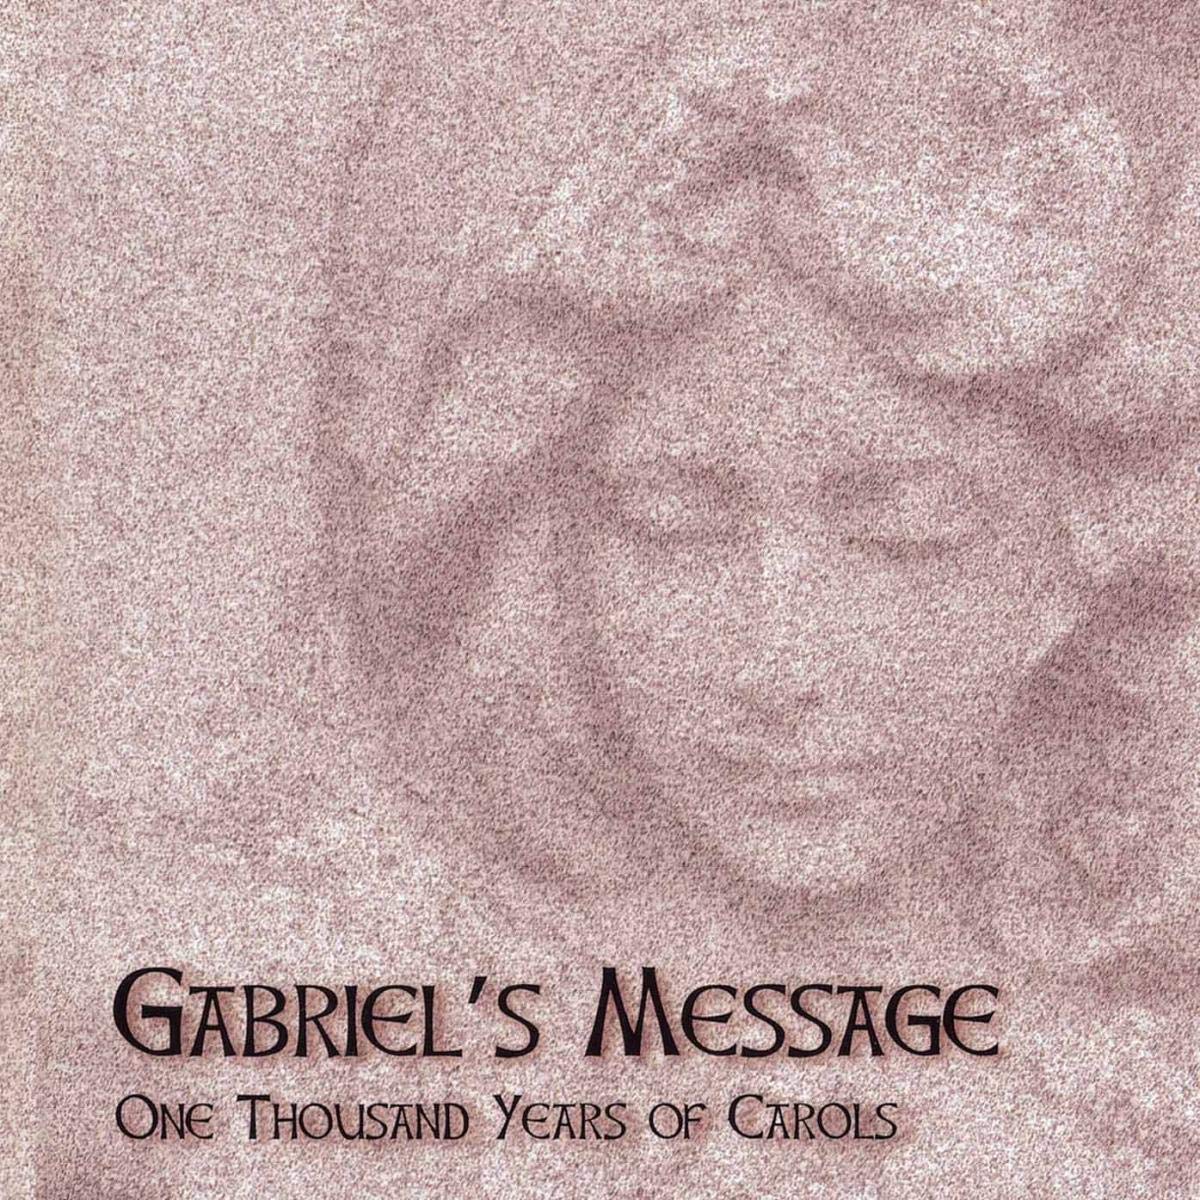 English Christmas Carols - Gabriel's Message